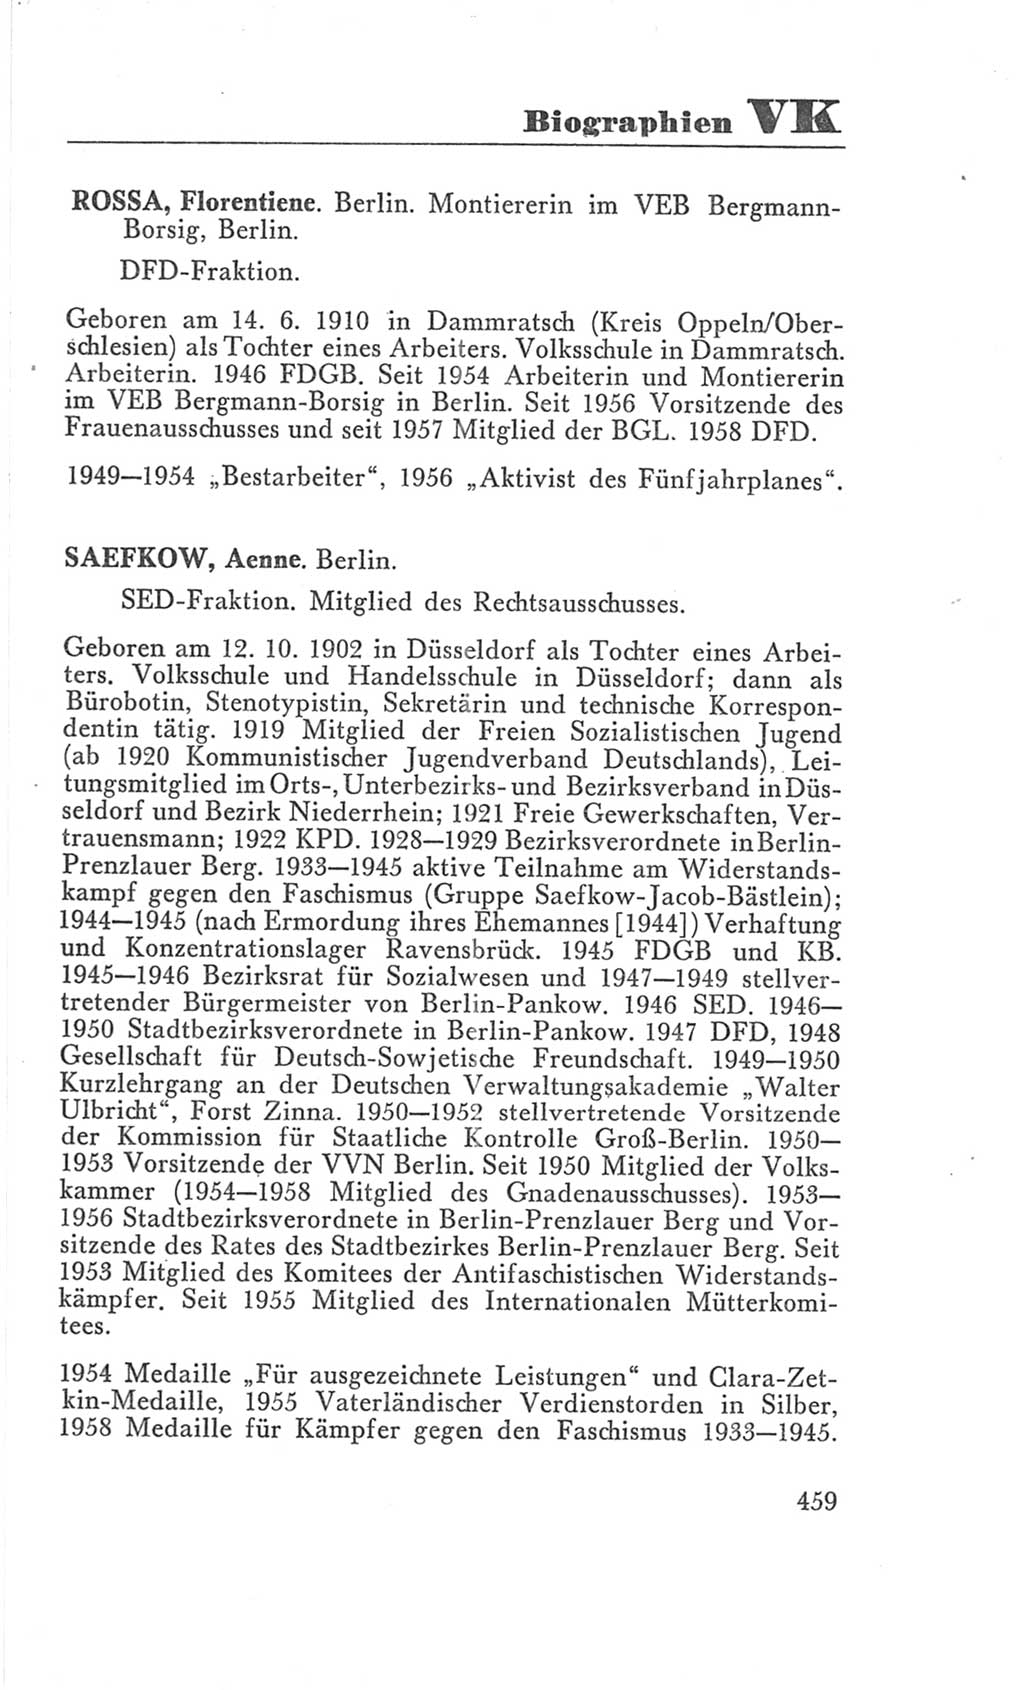 Handbuch der Volkskammer (VK) der Deutschen Demokratischen Republik (DDR), 3. Wahlperiode 1958-1963, Seite 459 (Hdb. VK. DDR 3. WP. 1958-1963, S. 459)